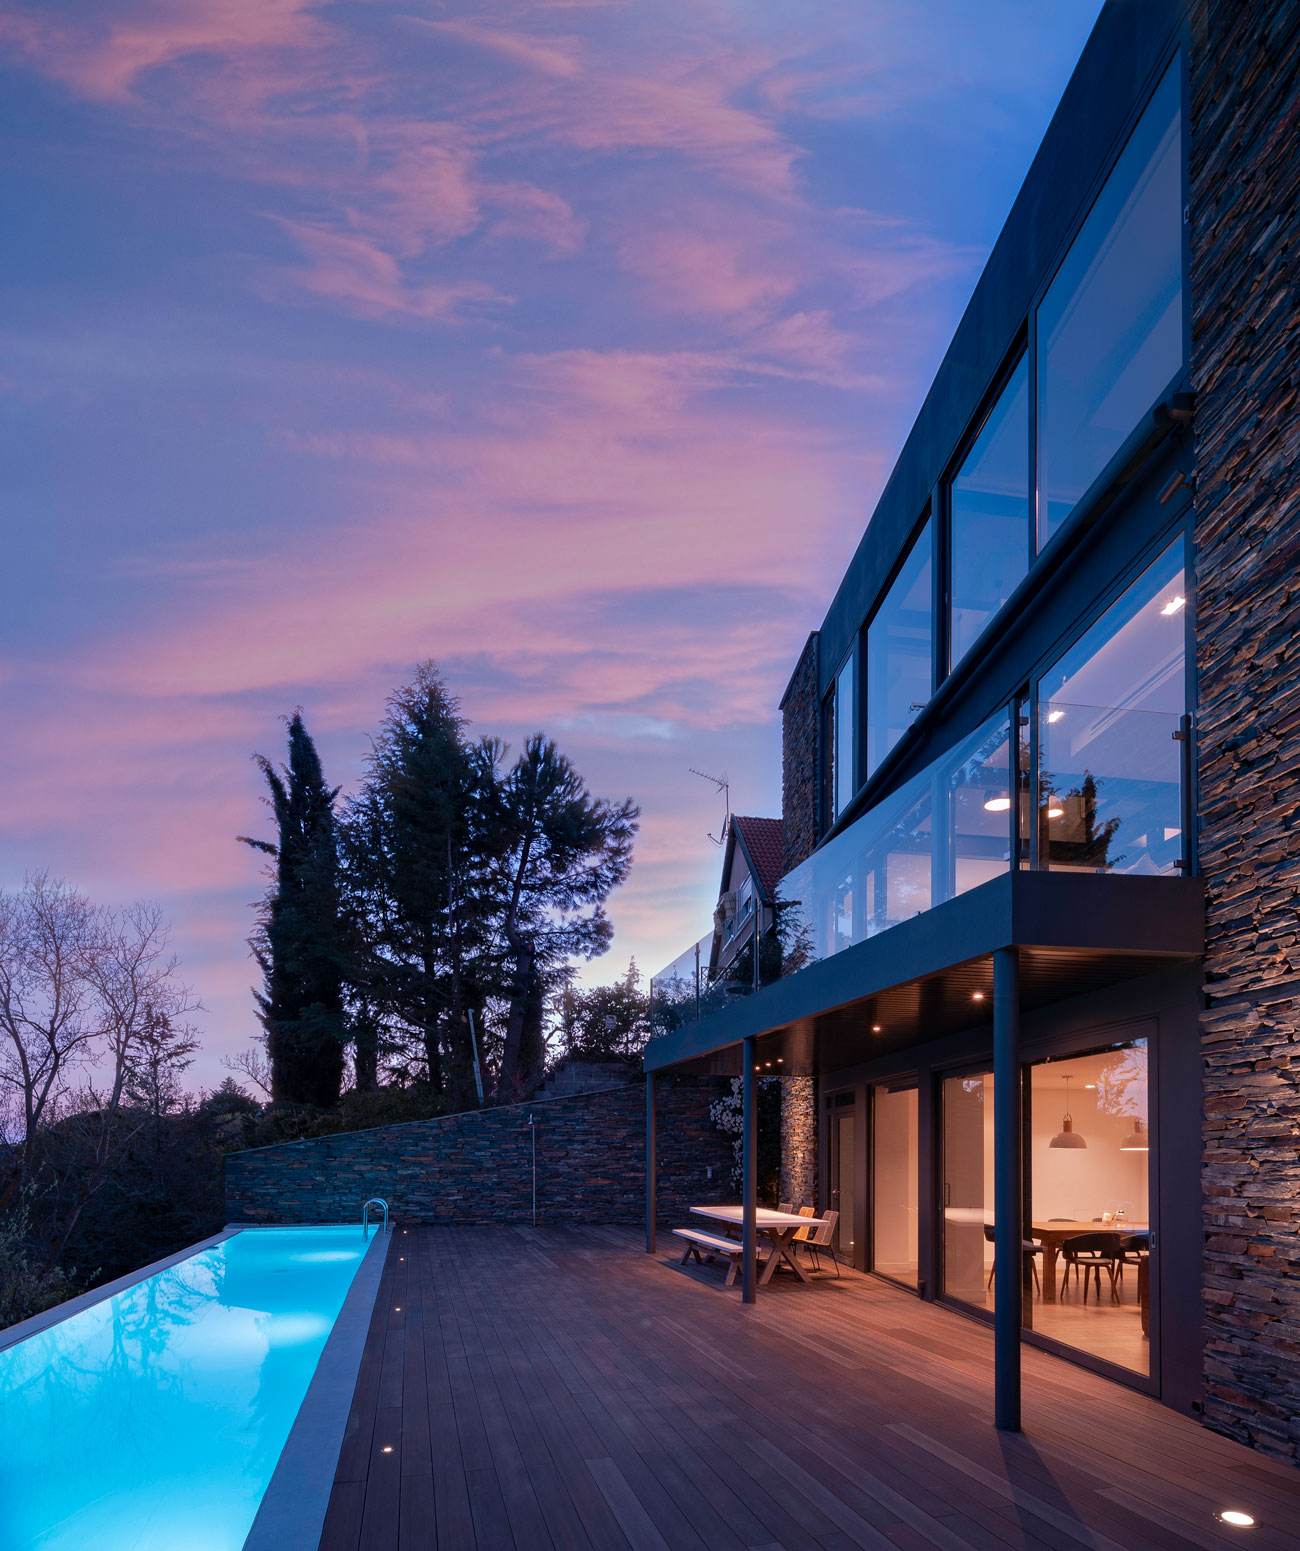 vista fachada trasera con piscina en ambiente nocturno vivienda en torrelodones